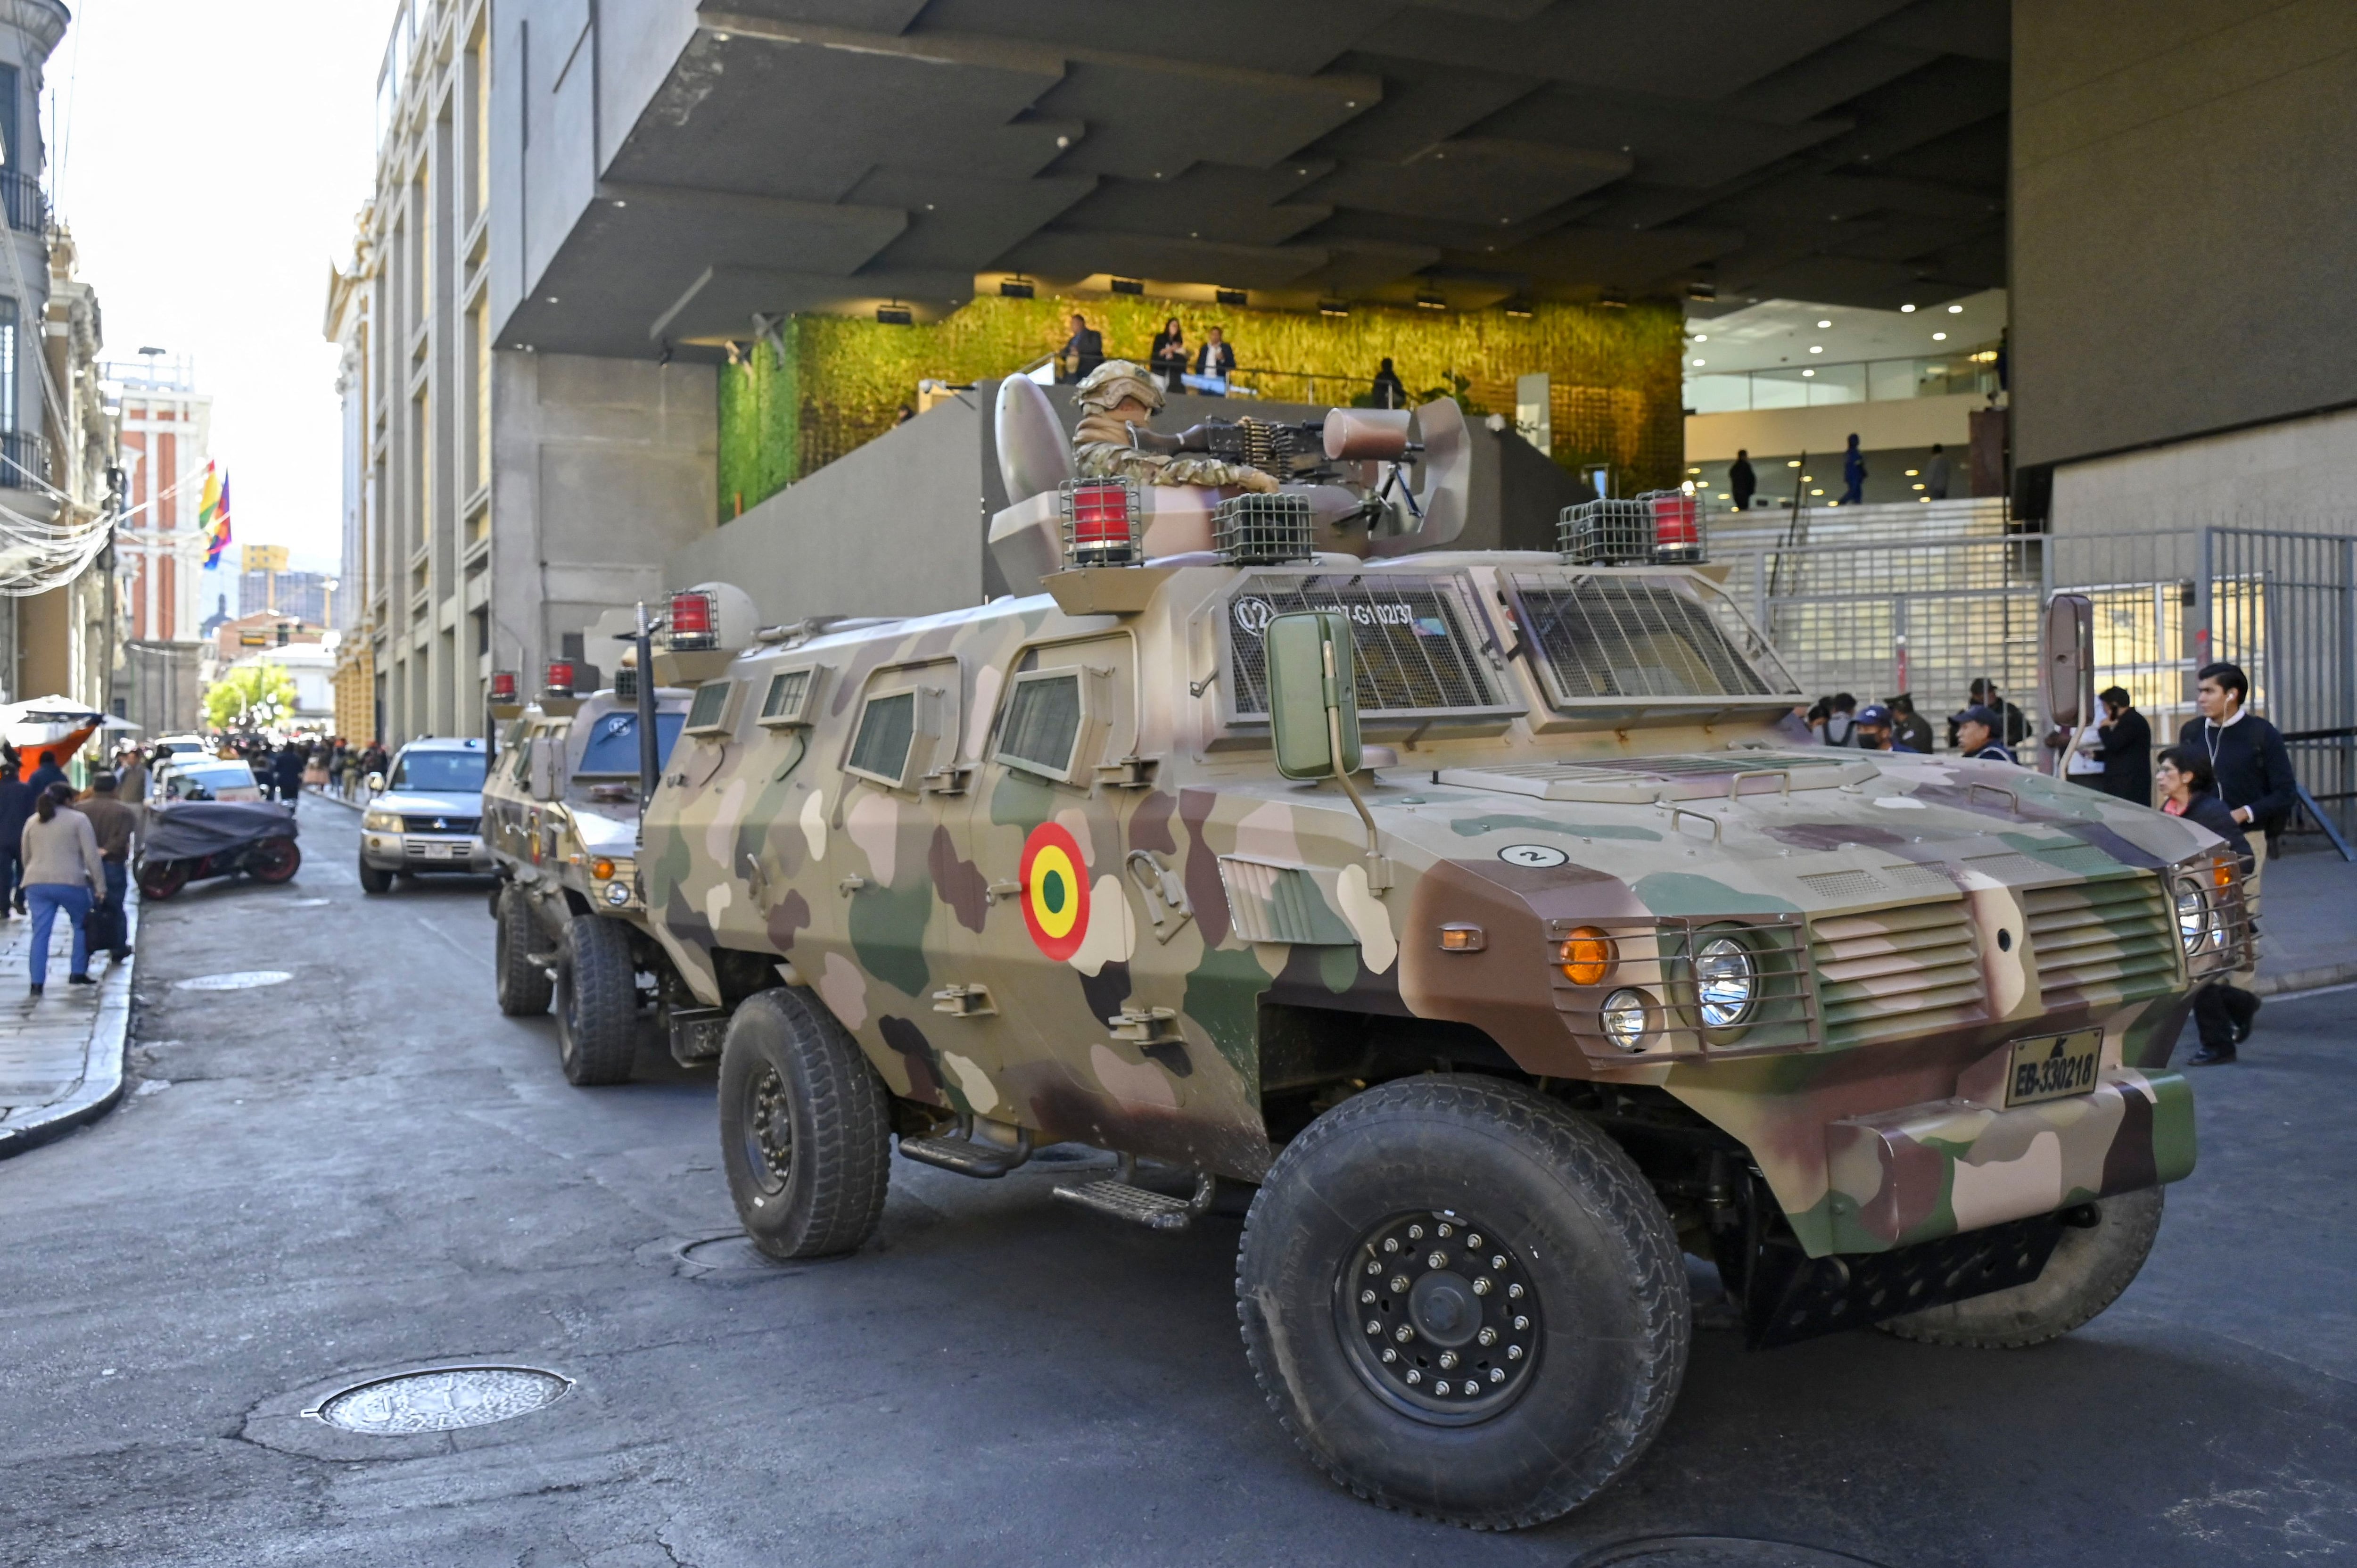 Tropas militares en vehículos blindados se ven en los alrededores de la Plaza de Armas en La Paz, Bolivia.